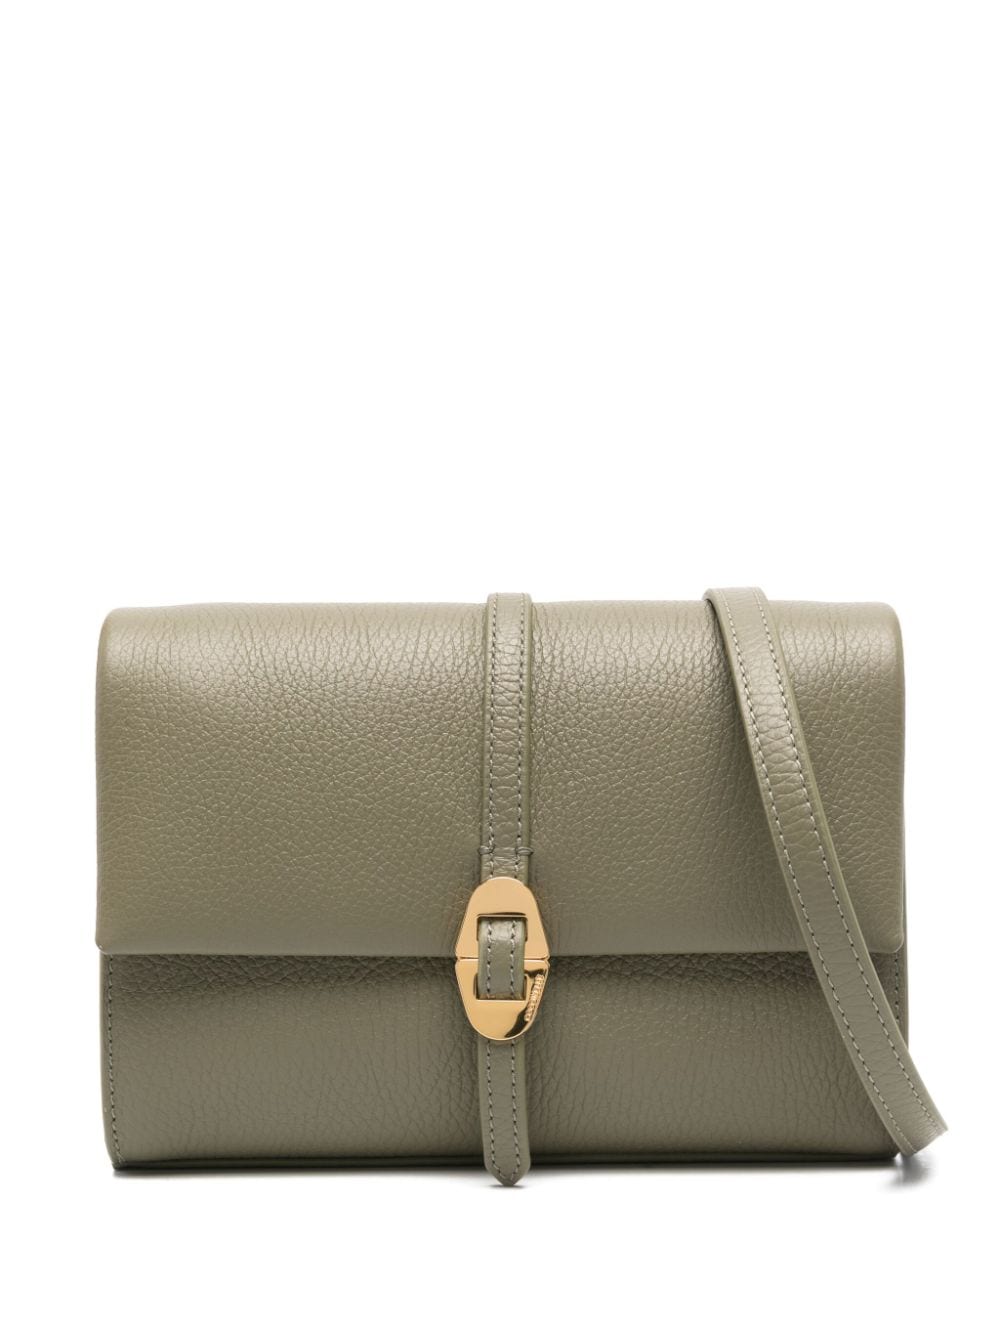 Coccinelle Dorian leather crossbody bag - Green von Coccinelle